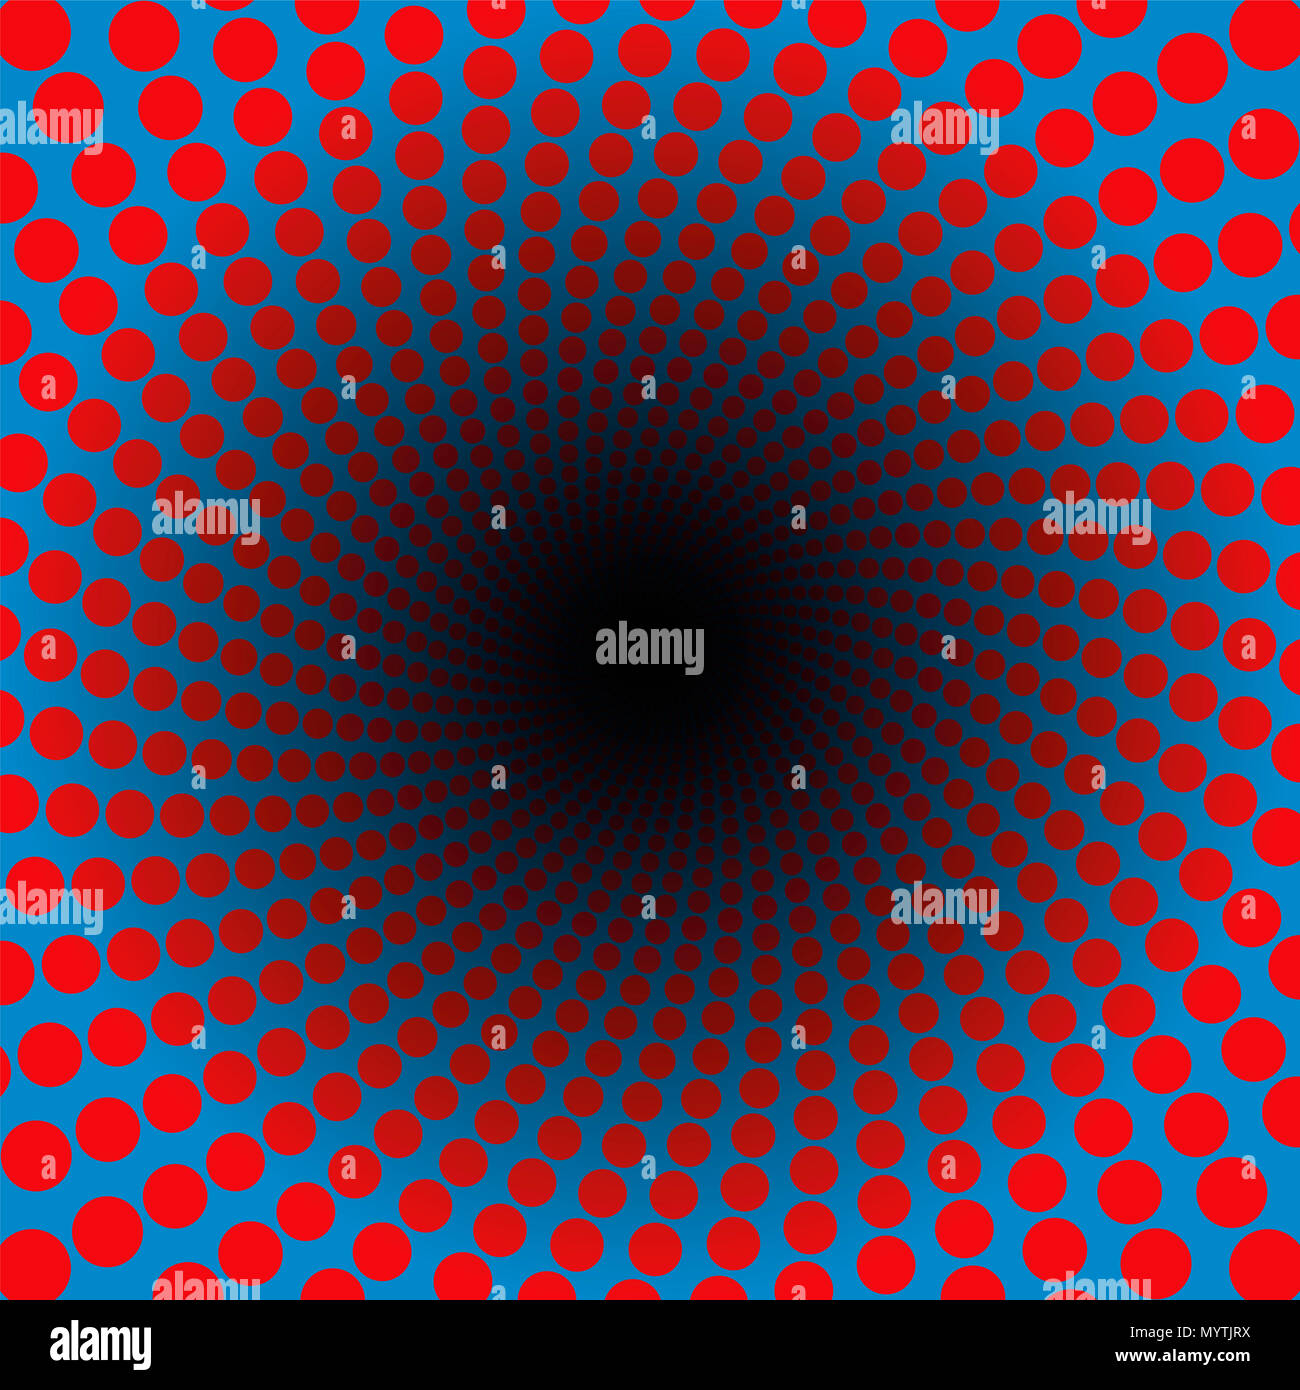 Spirale de points rouges dans un tunnel bleu avec centre noir - hypnotic, dynamique, psychédélique, gri-gri, pulser - circulaire torsadée fractal. Banque D'Images